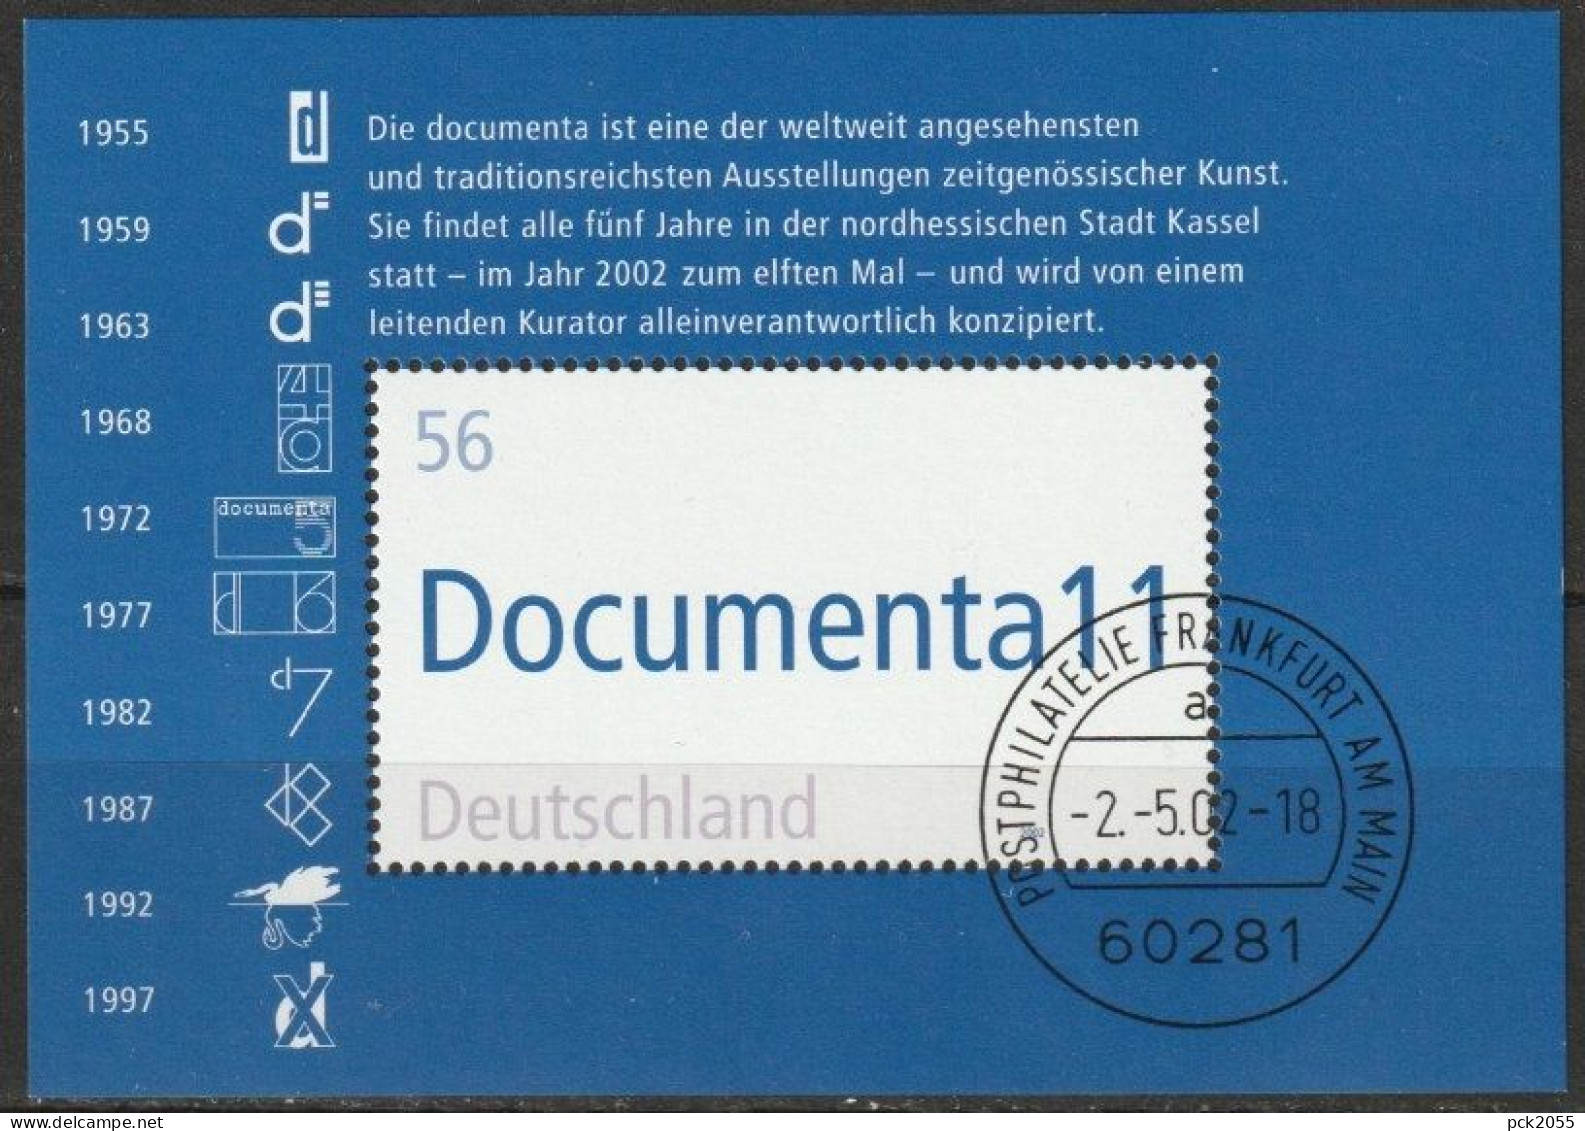 BRD 2002 MiNr.2257 Block 58 O Gest. EST. Frankfurt Documenta11( Bl. 50)günstiger Versand - 2001-2010